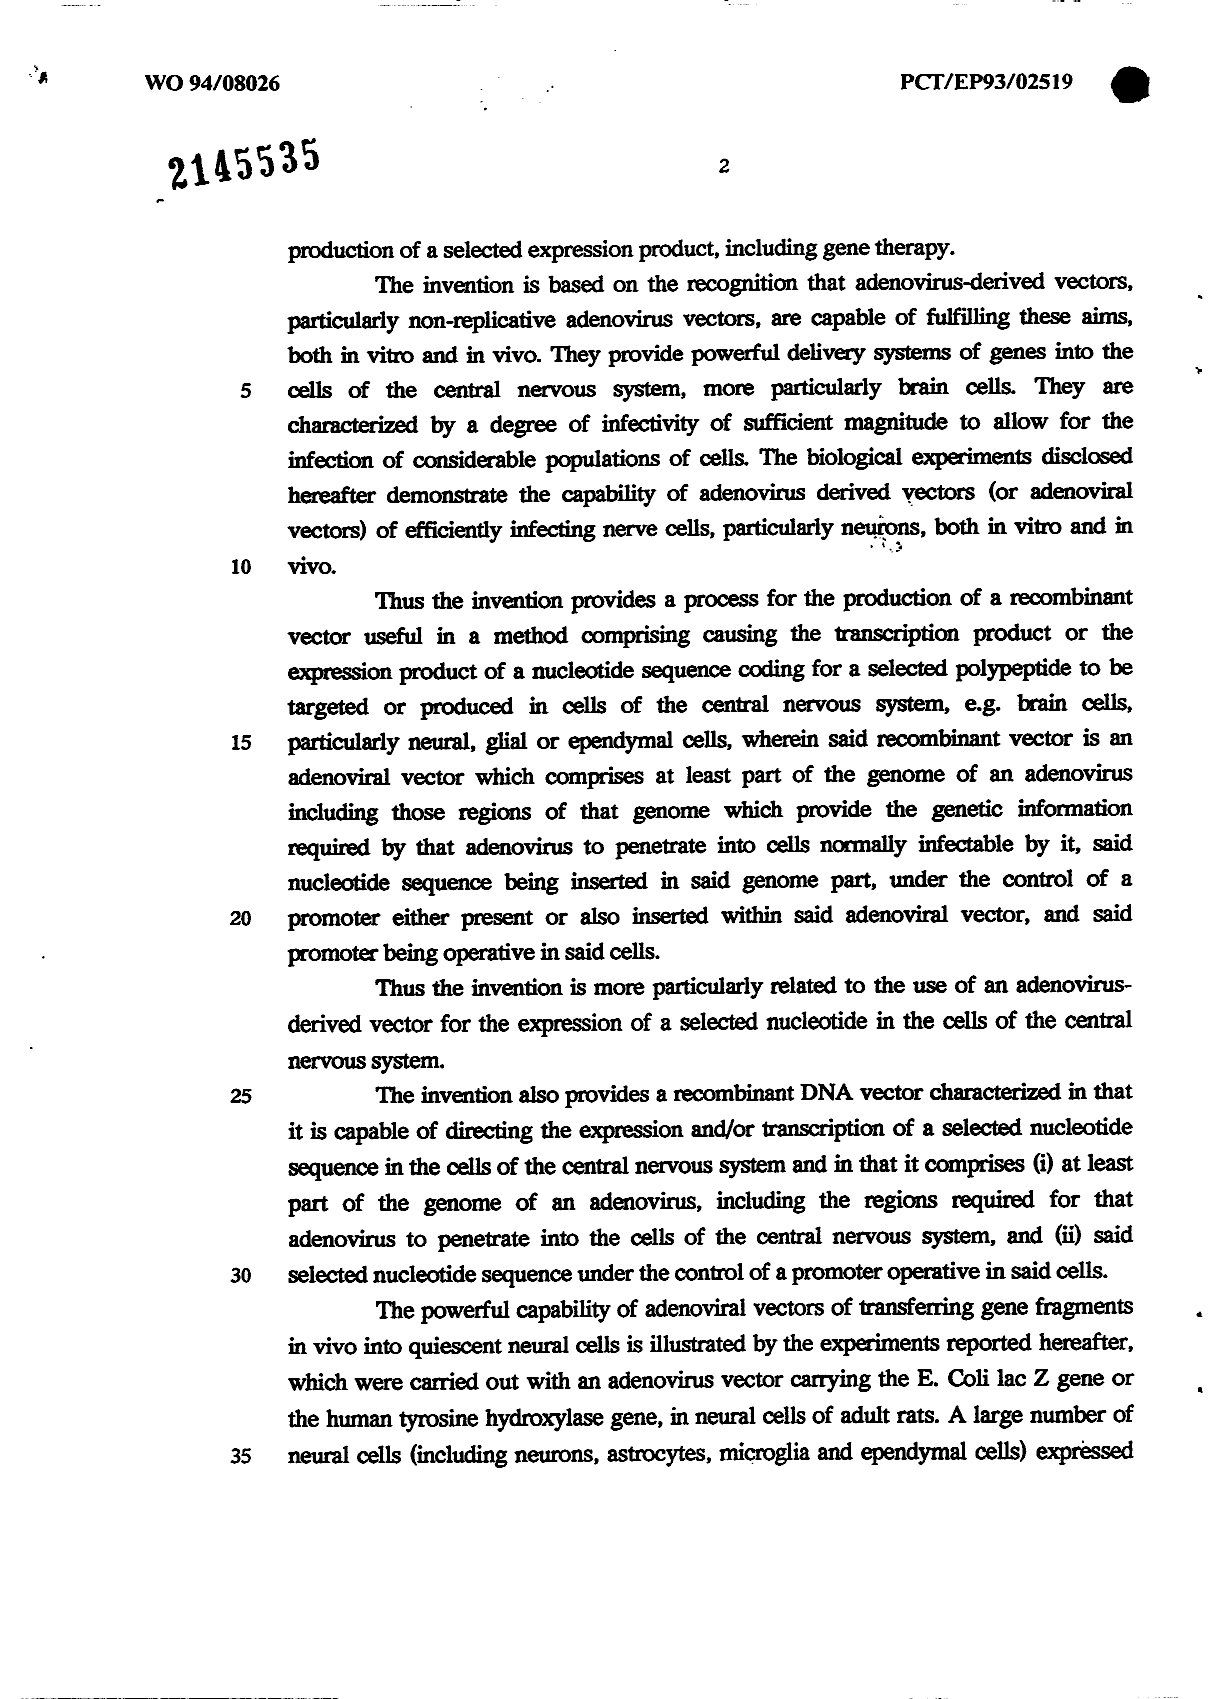 Canadian Patent Document 2145535. Description 20021201. Image 2 of 23